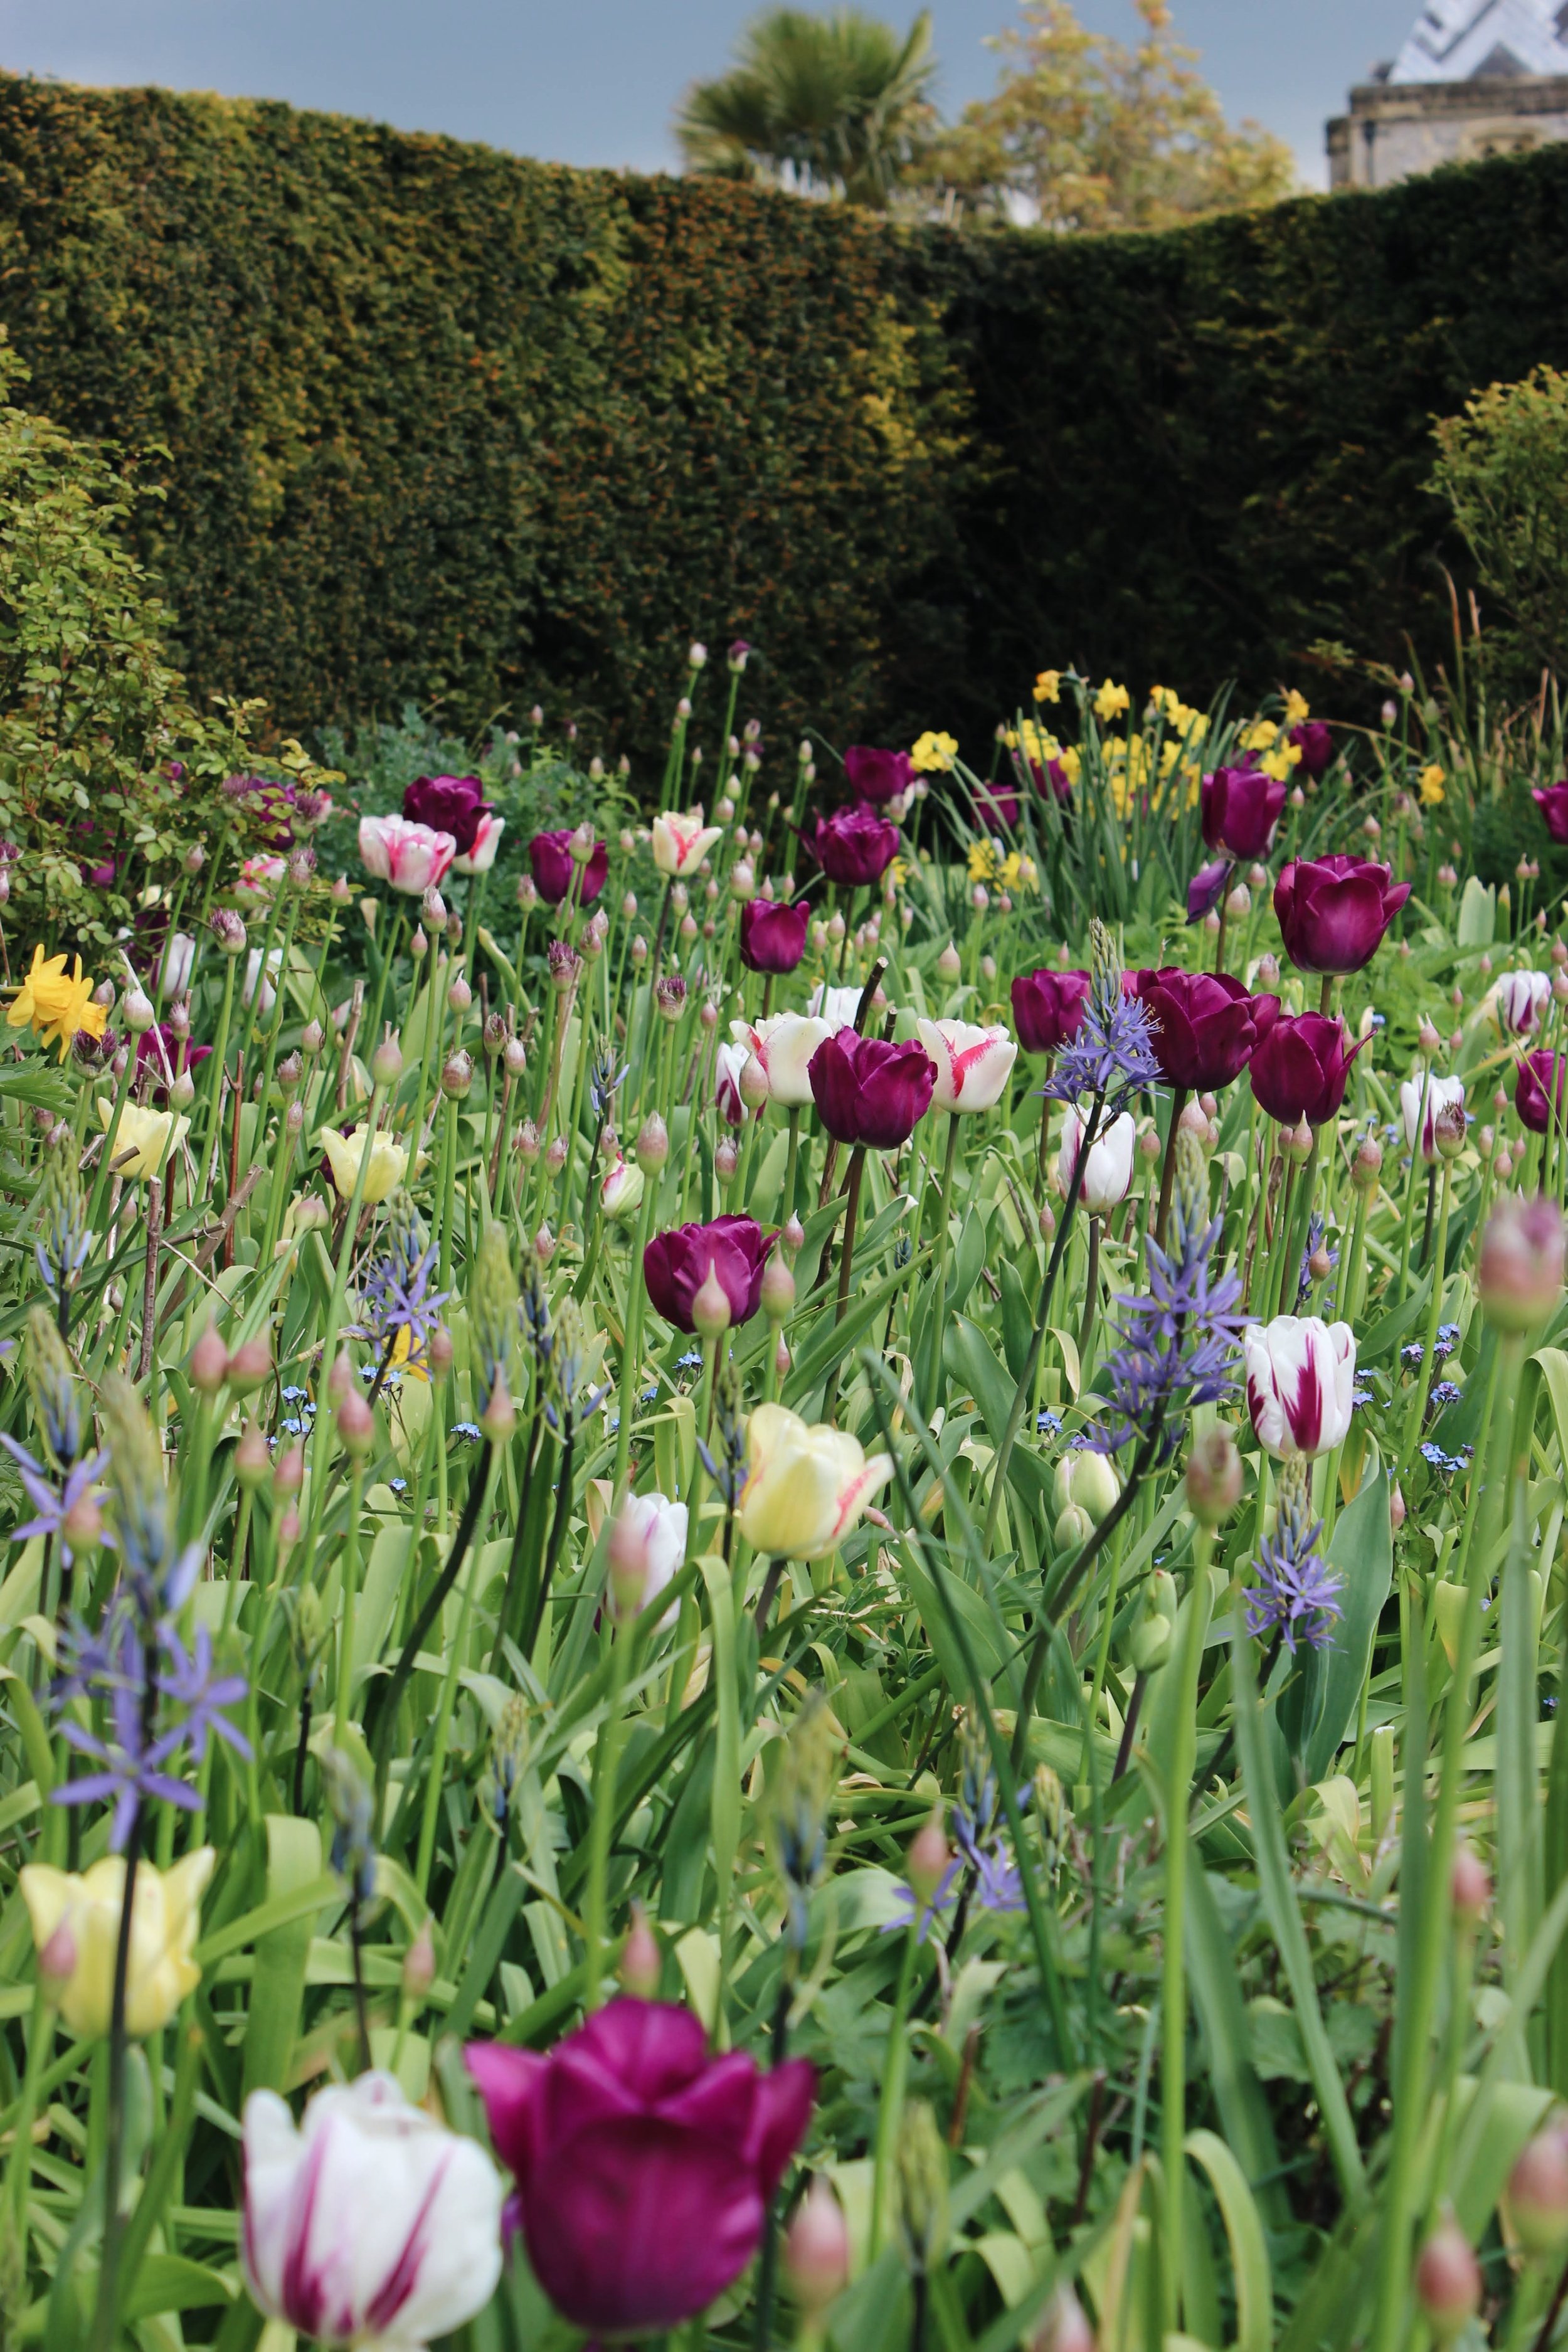 arundel castle garden tulips6.jpg